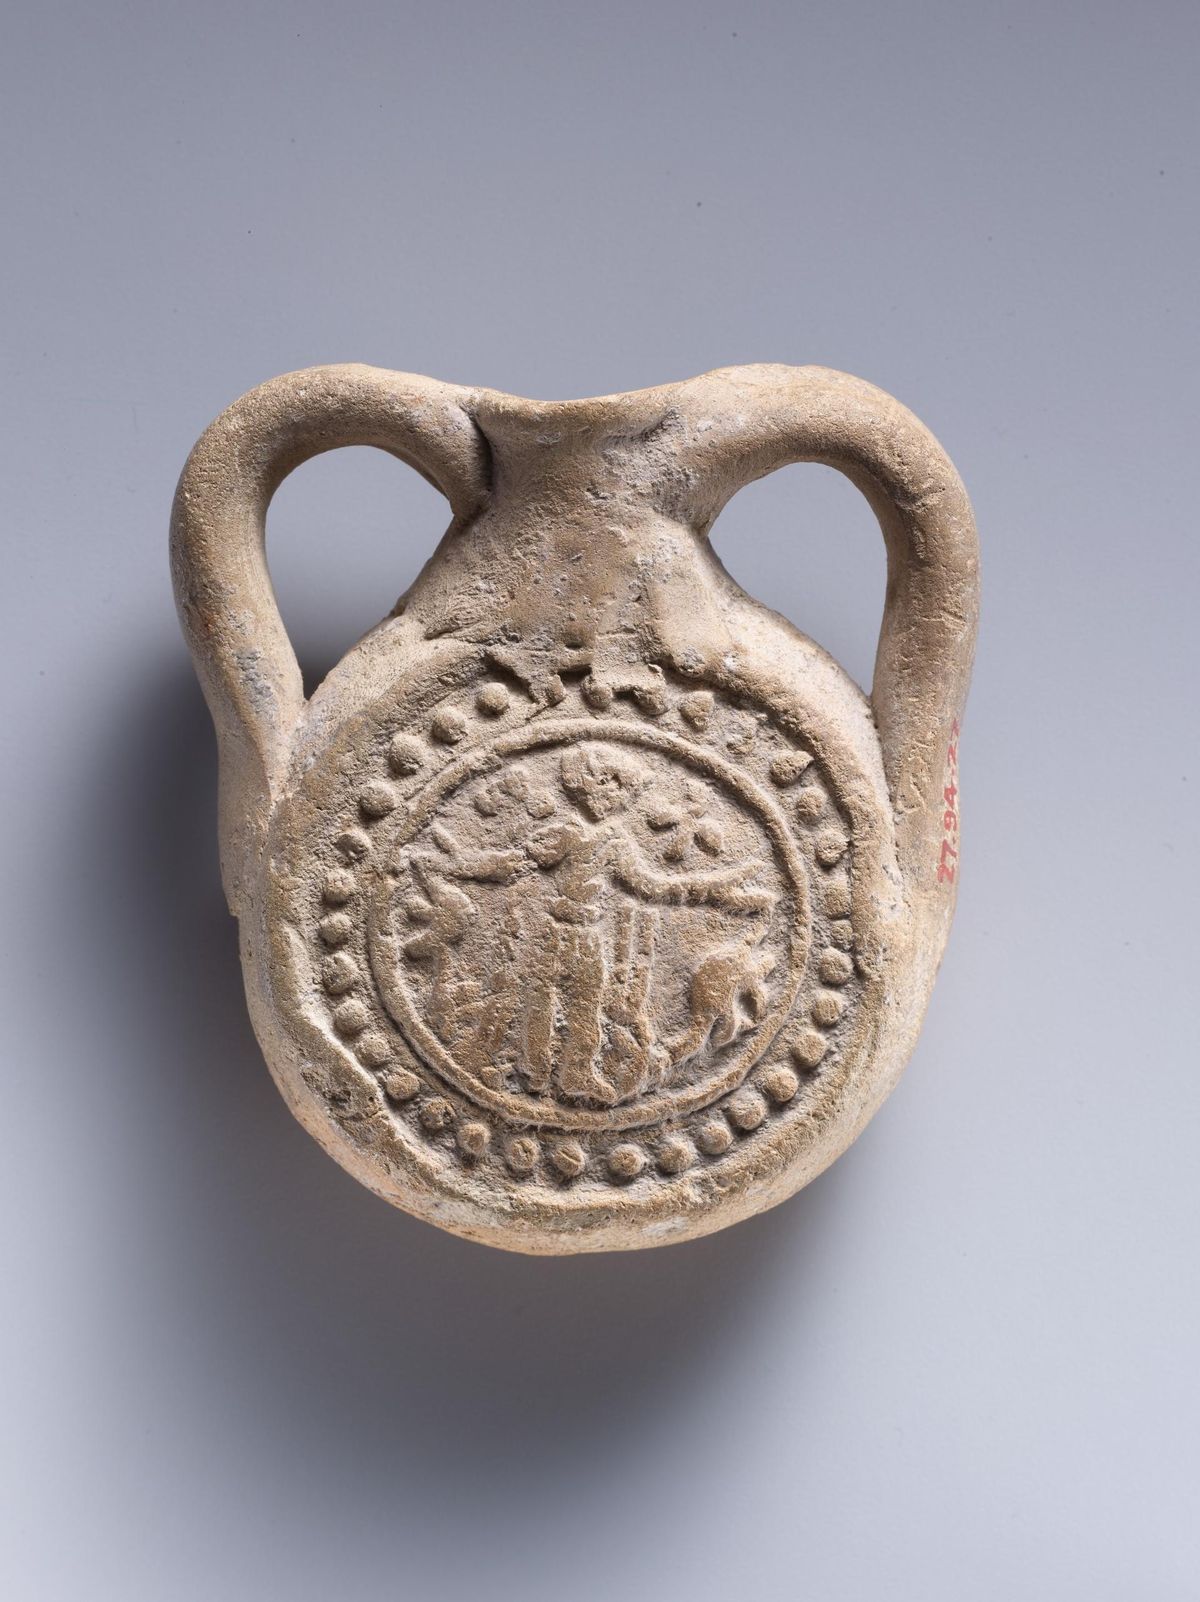 Vahemere-äärsete maade palverändurid kasutasid pudelilaadseid ampullasid juba hiljemalt 3.–4. sajandil. Pildil on 6.–8. sajandi savipudel, mis pärineb märterpühakule, Rooma sõdalasele Menasele pühendatud palverännukohast Egiptuses.